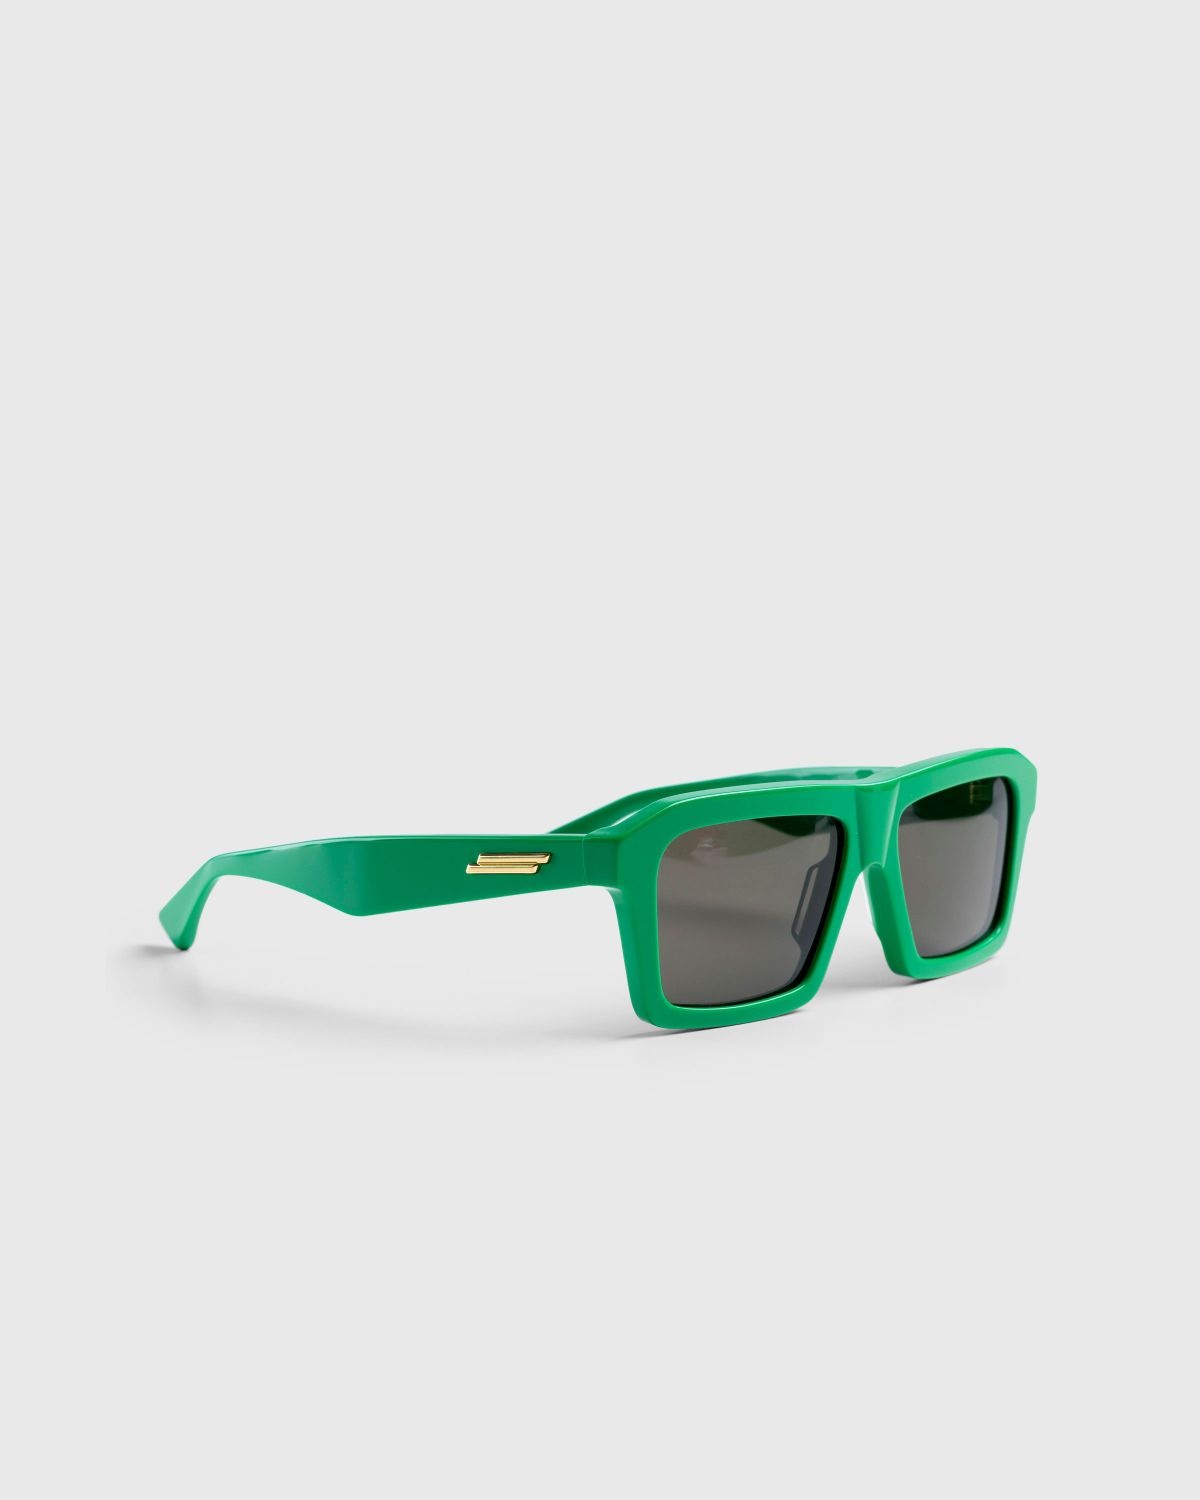 Bottega Veneta – Classic Square Sunglasses Green/Green - 2